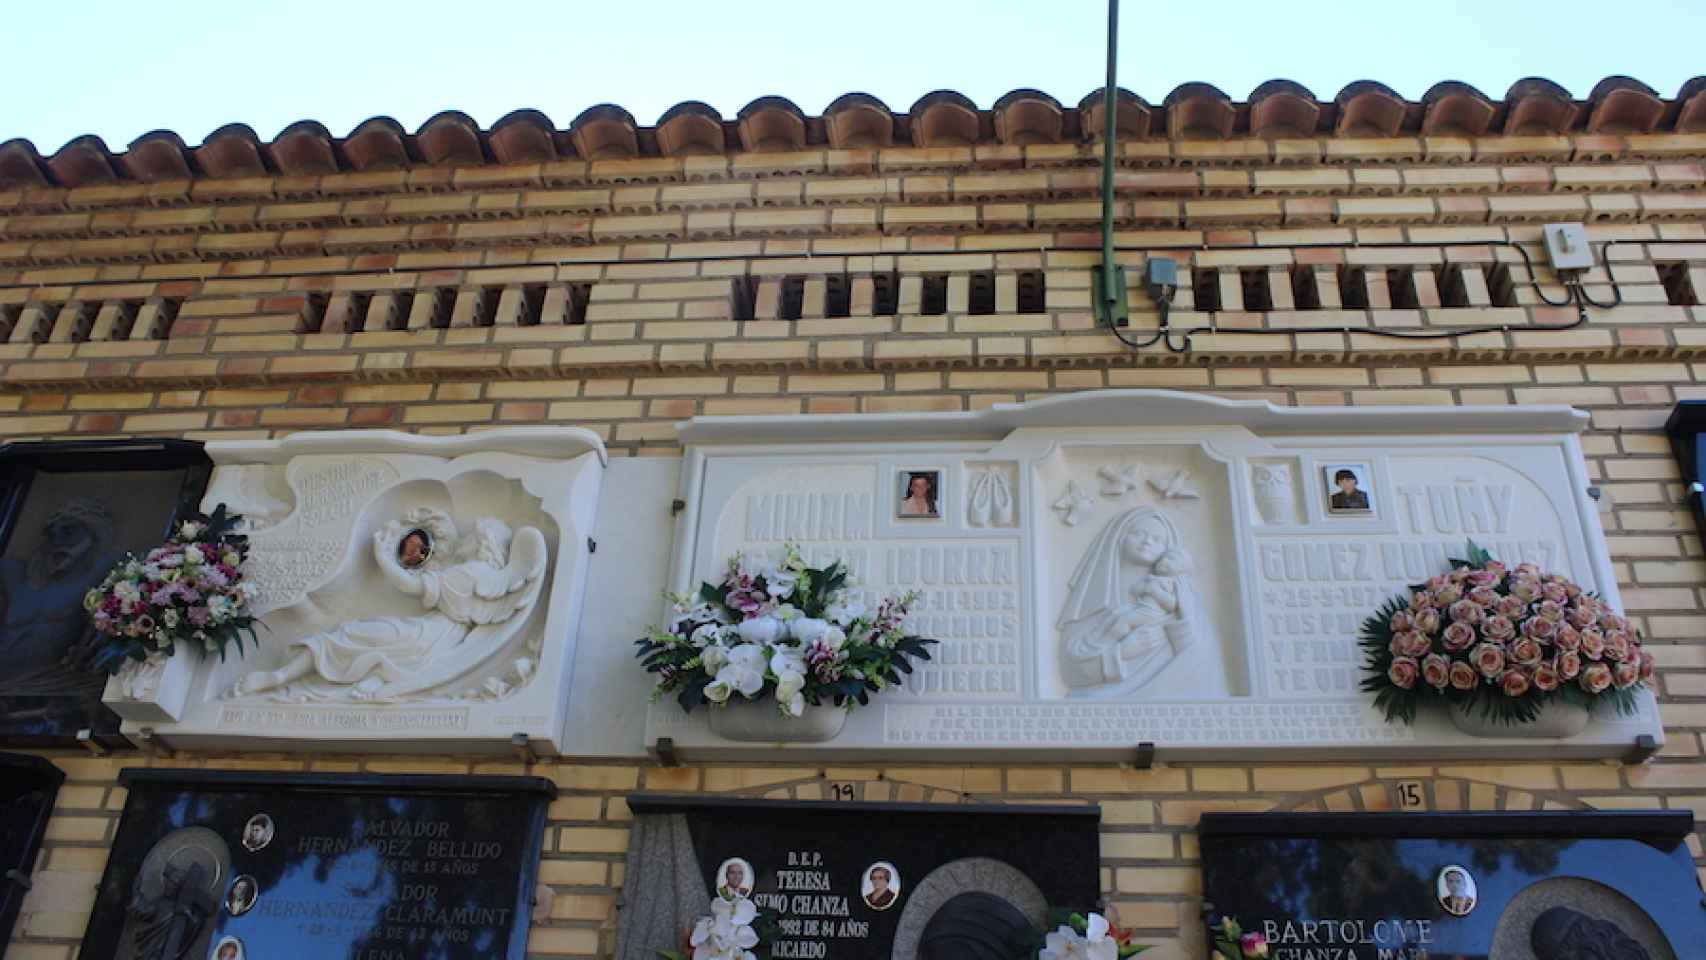 Míriam, Toñi y Desirée están enterradas juntas en el cementerio de Alcàsser